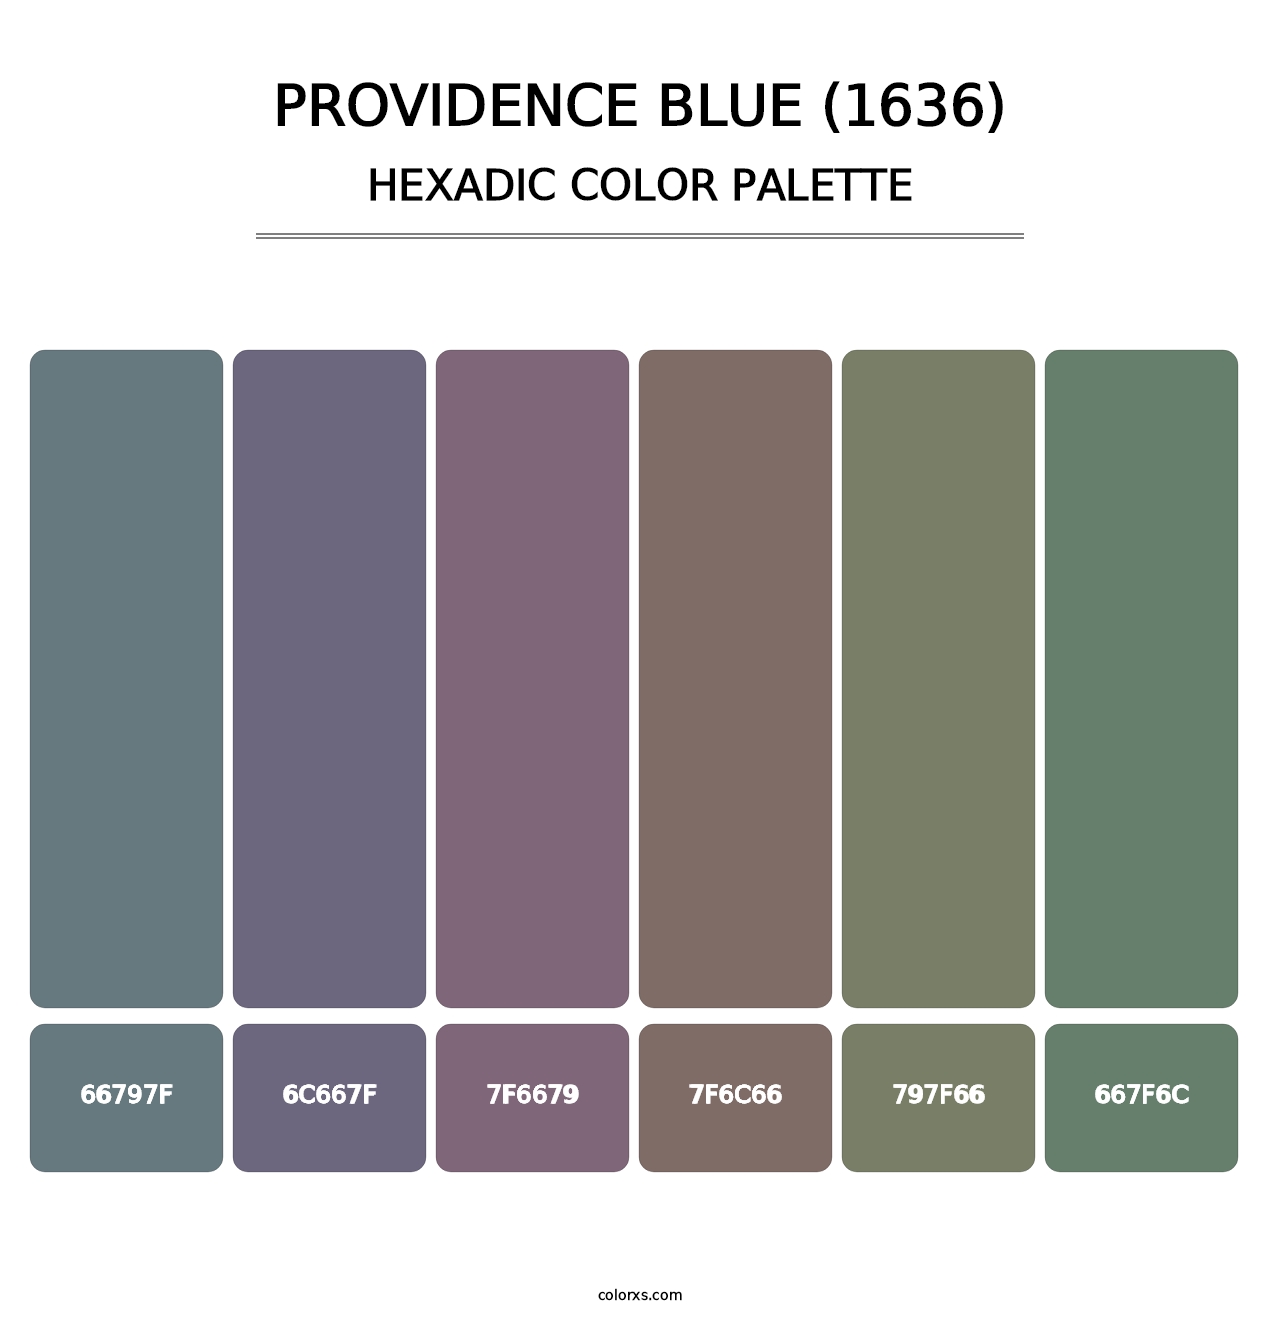 Providence Blue (1636) - Hexadic Color Palette